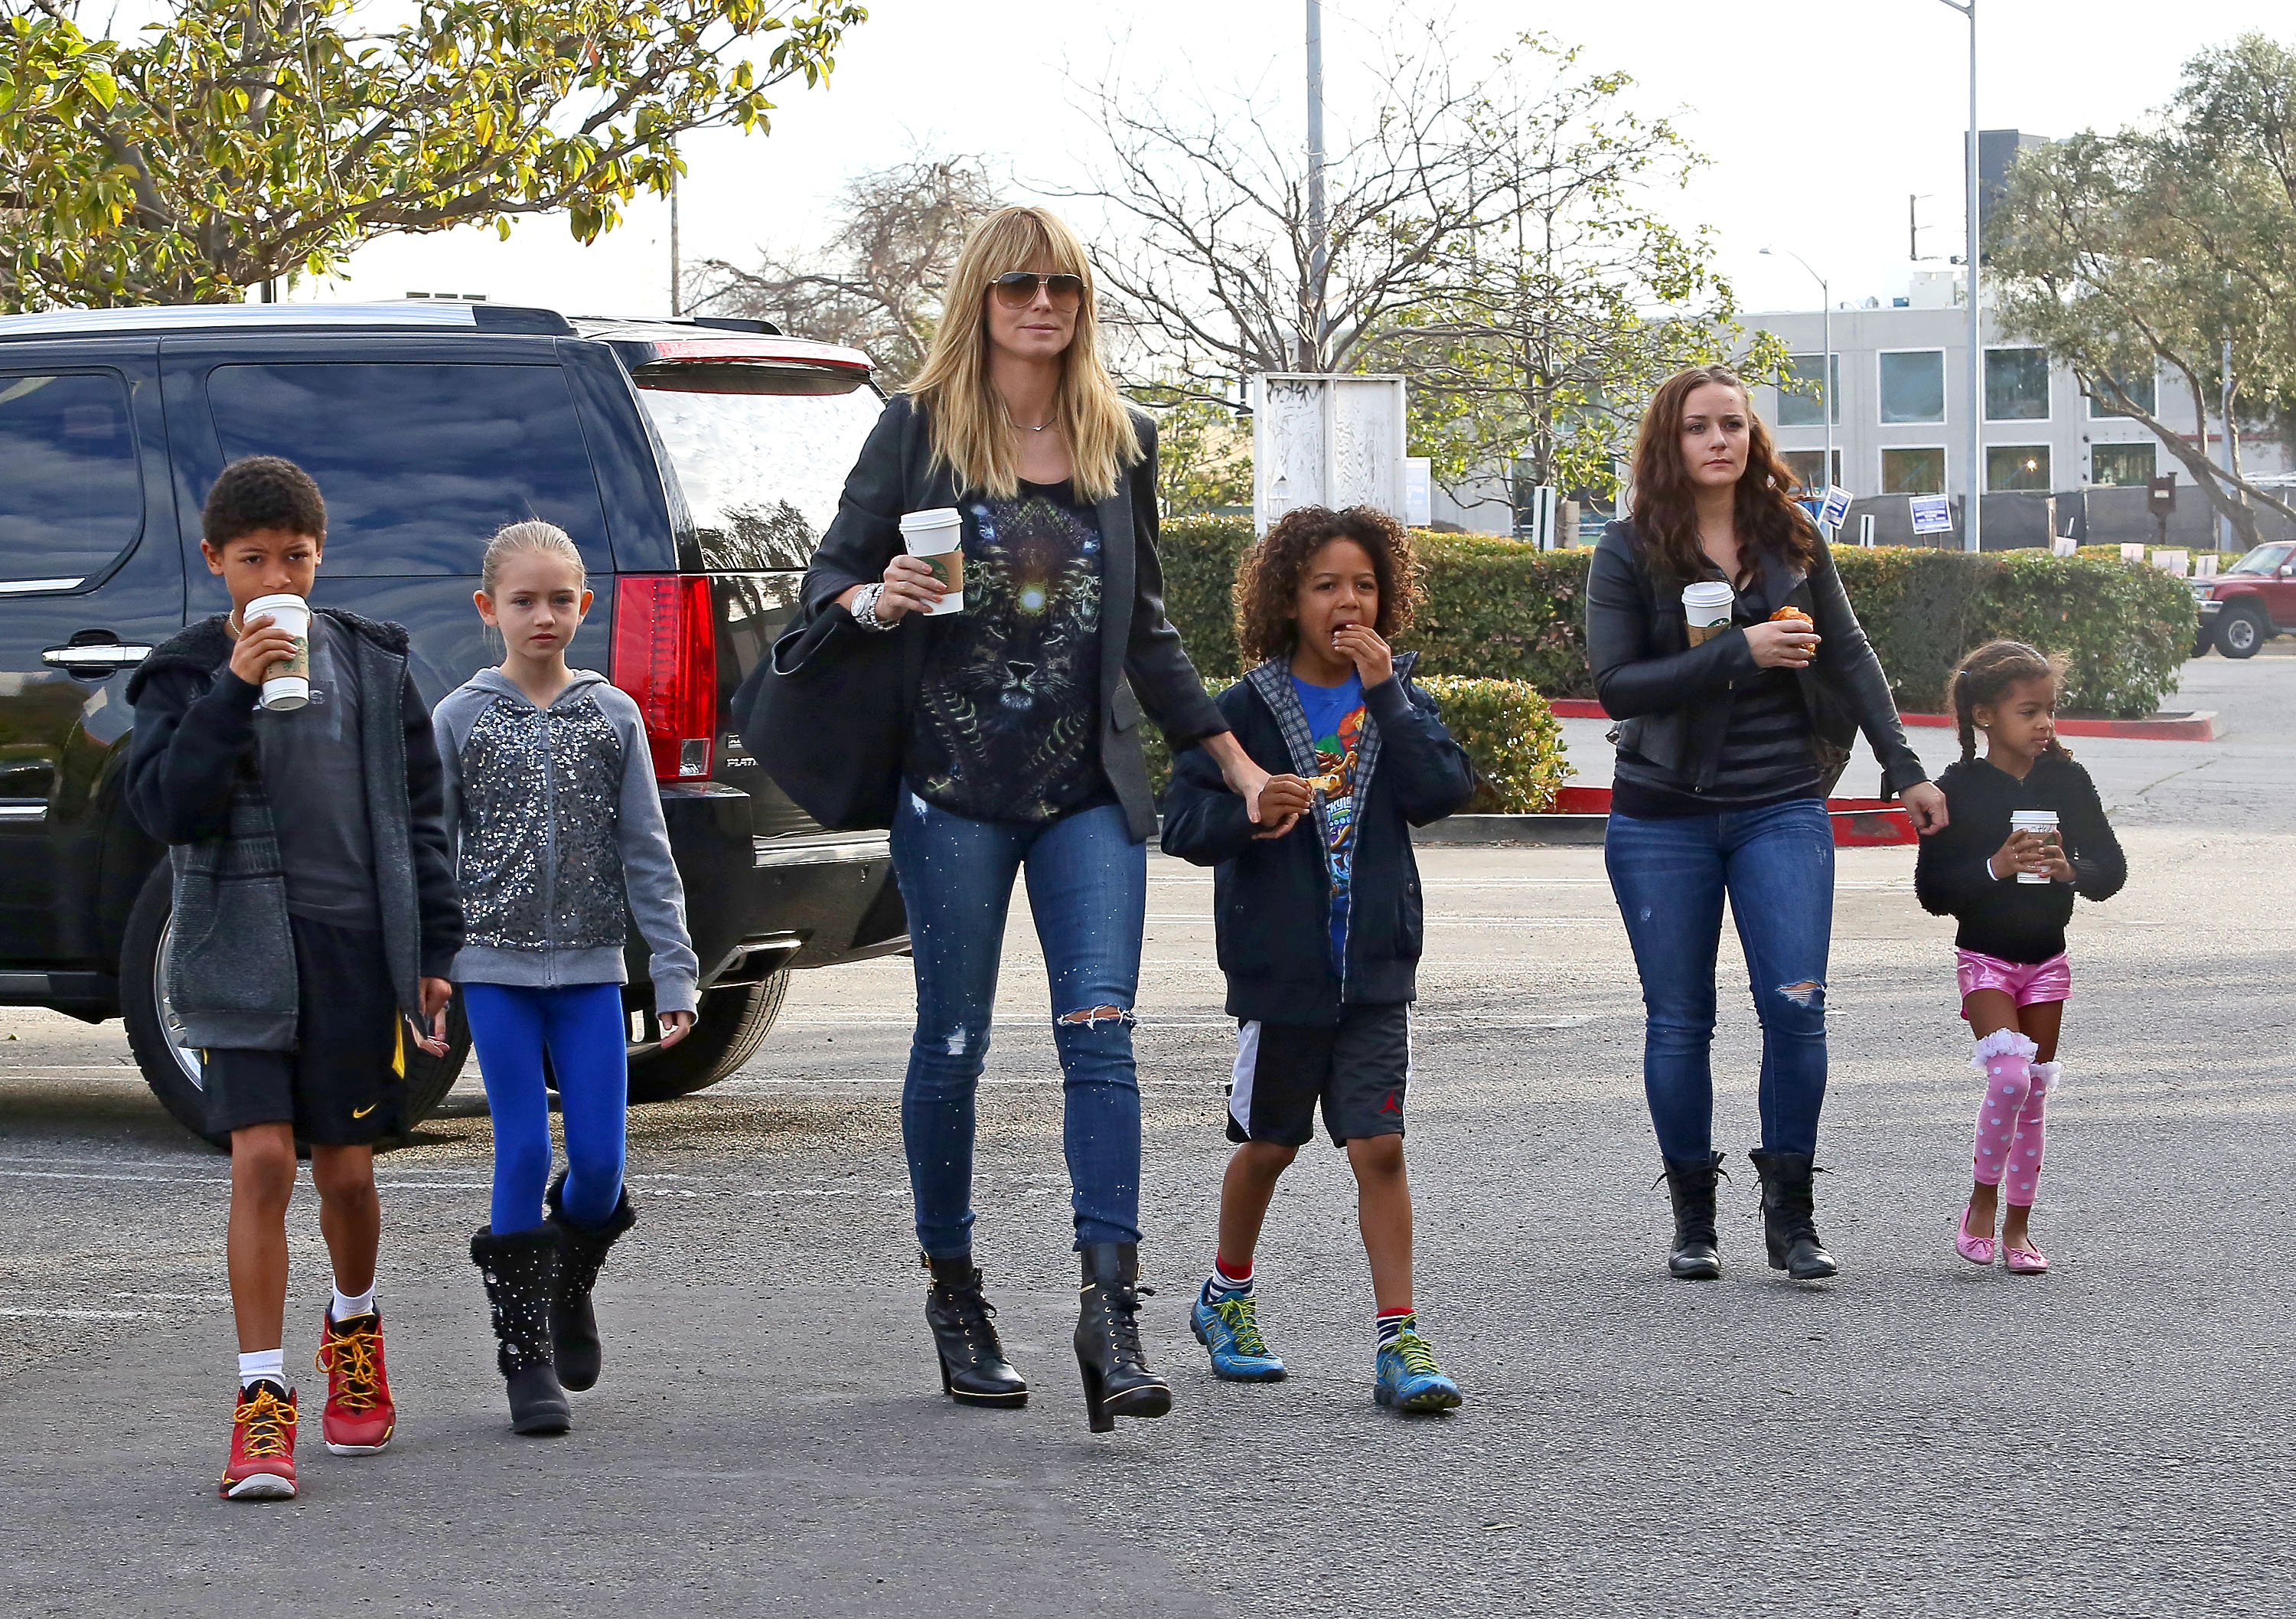 Heidi Klum est vue avec ses enfants, Henry, Johan, Lou et Leni à Los Angeles en 2014 | Source : Getty Images